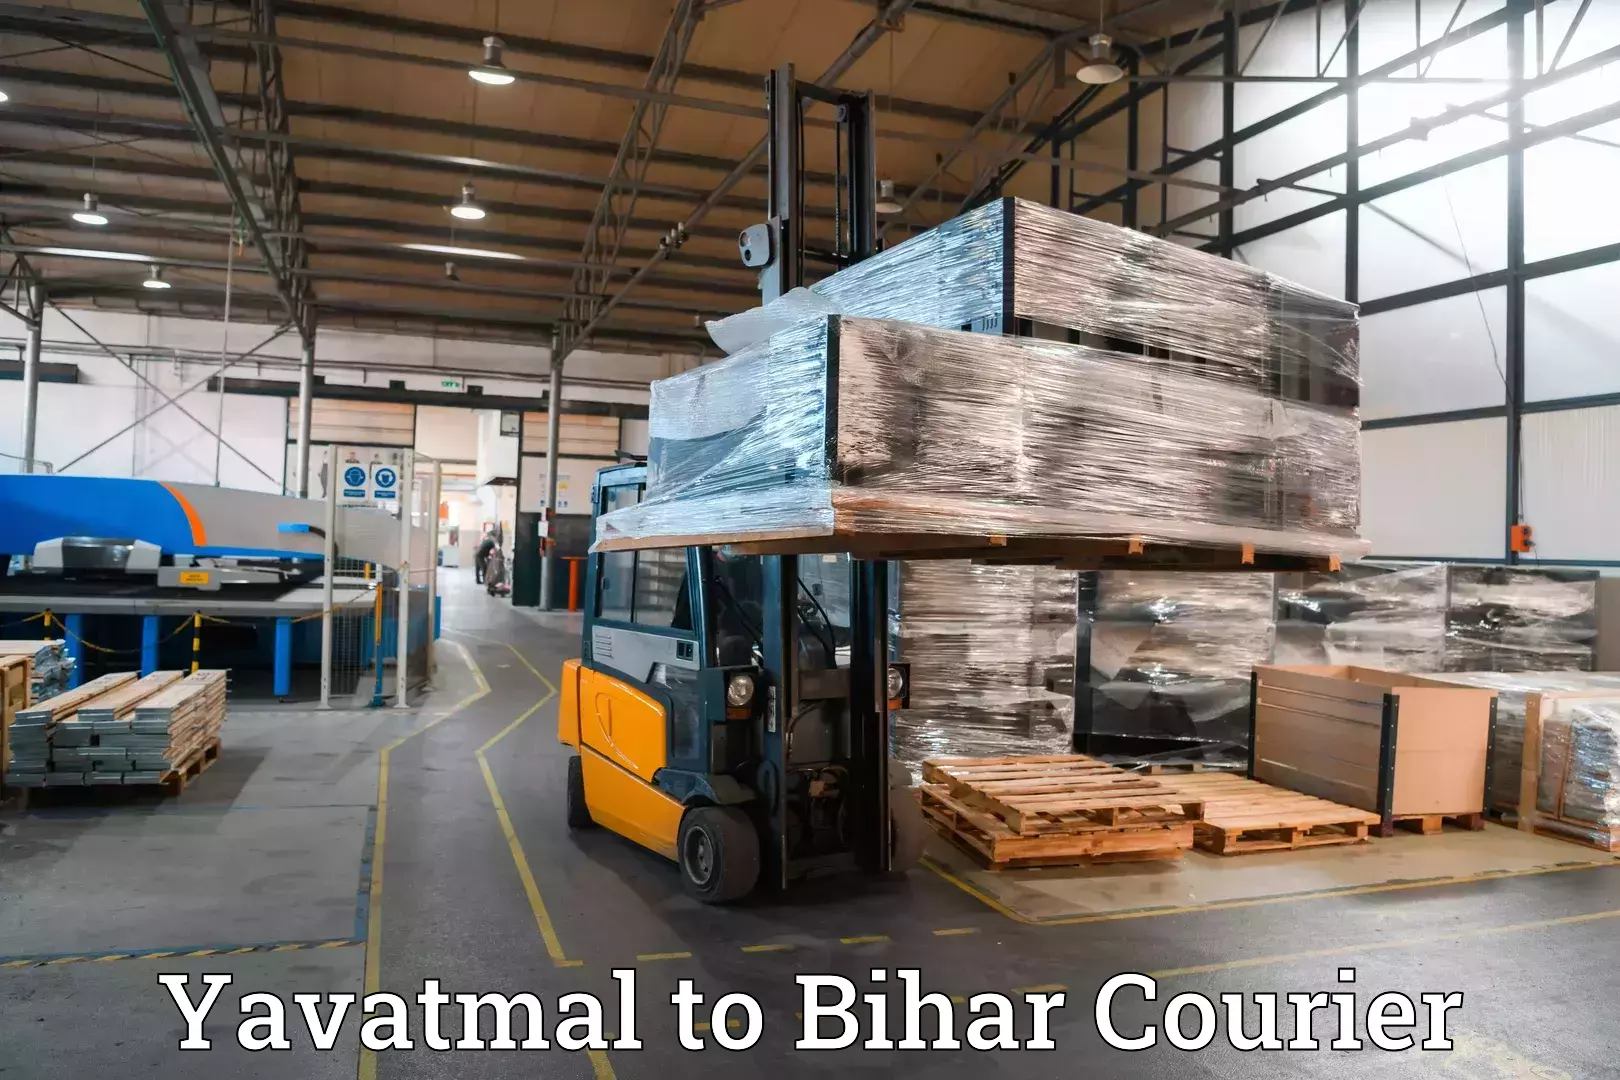 Luggage shipment specialists Yavatmal to Bikramganj